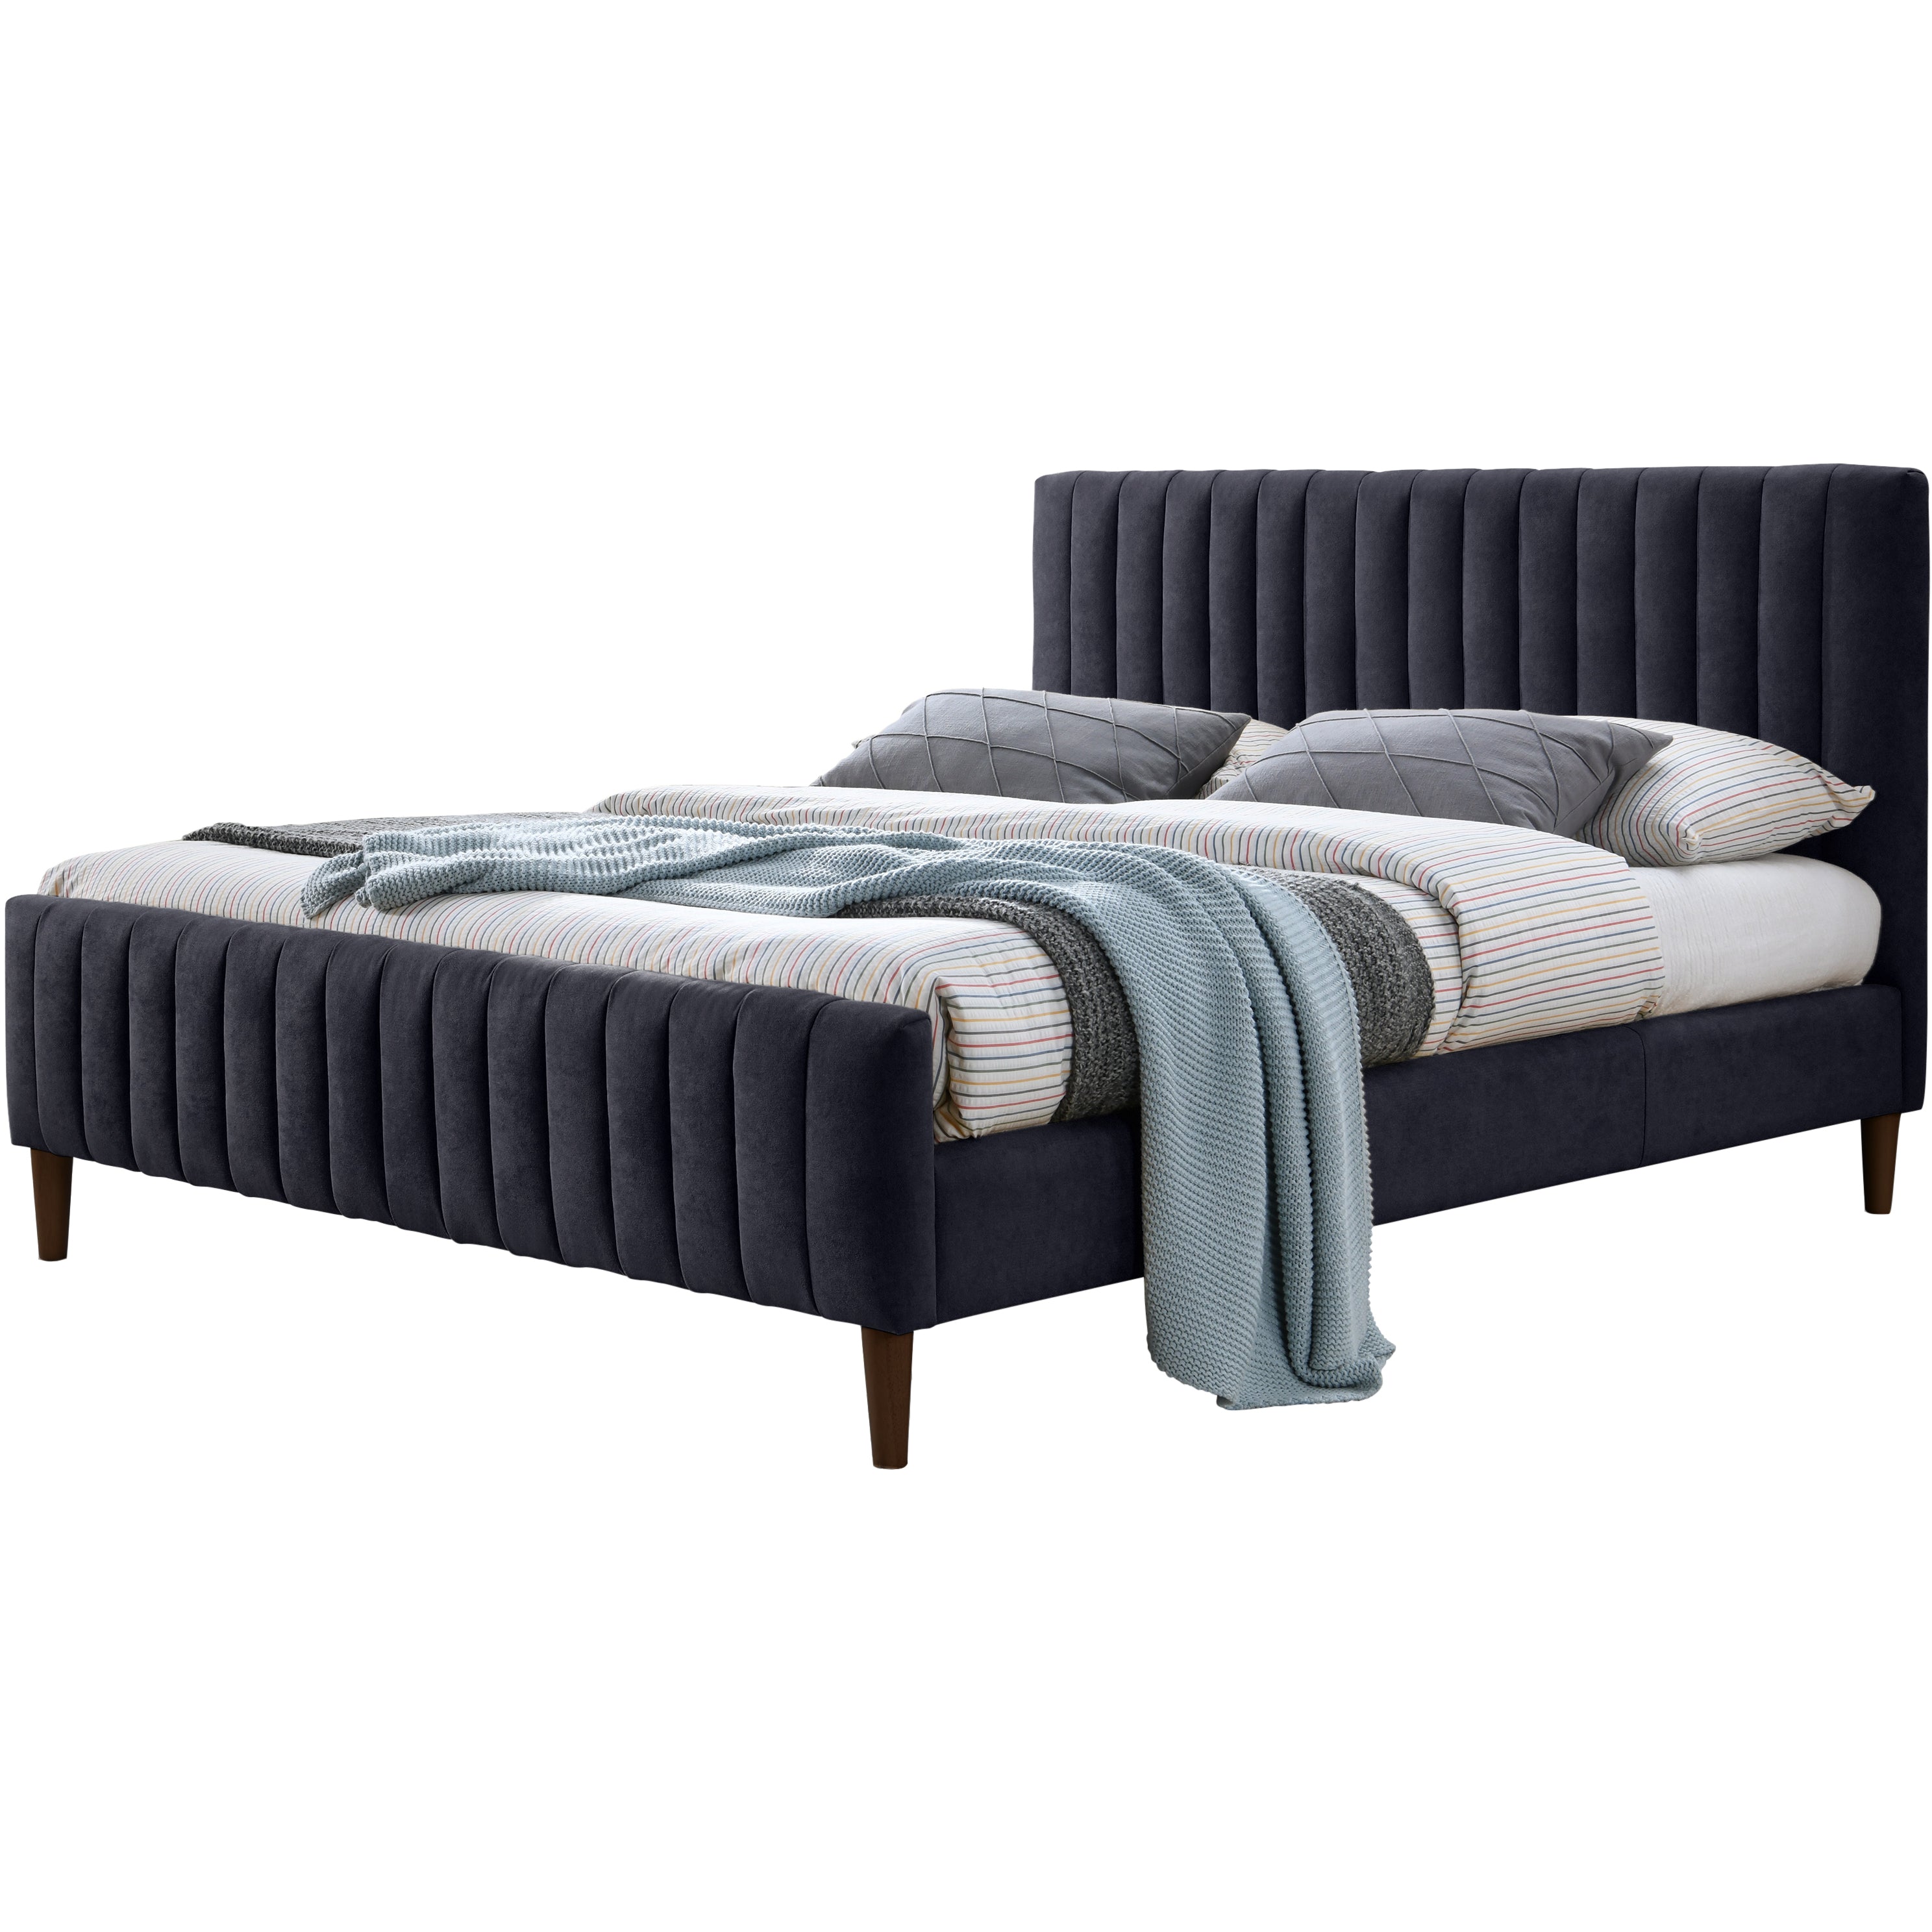 Spencer Upholstered Platform Bed - Queen size, Blue